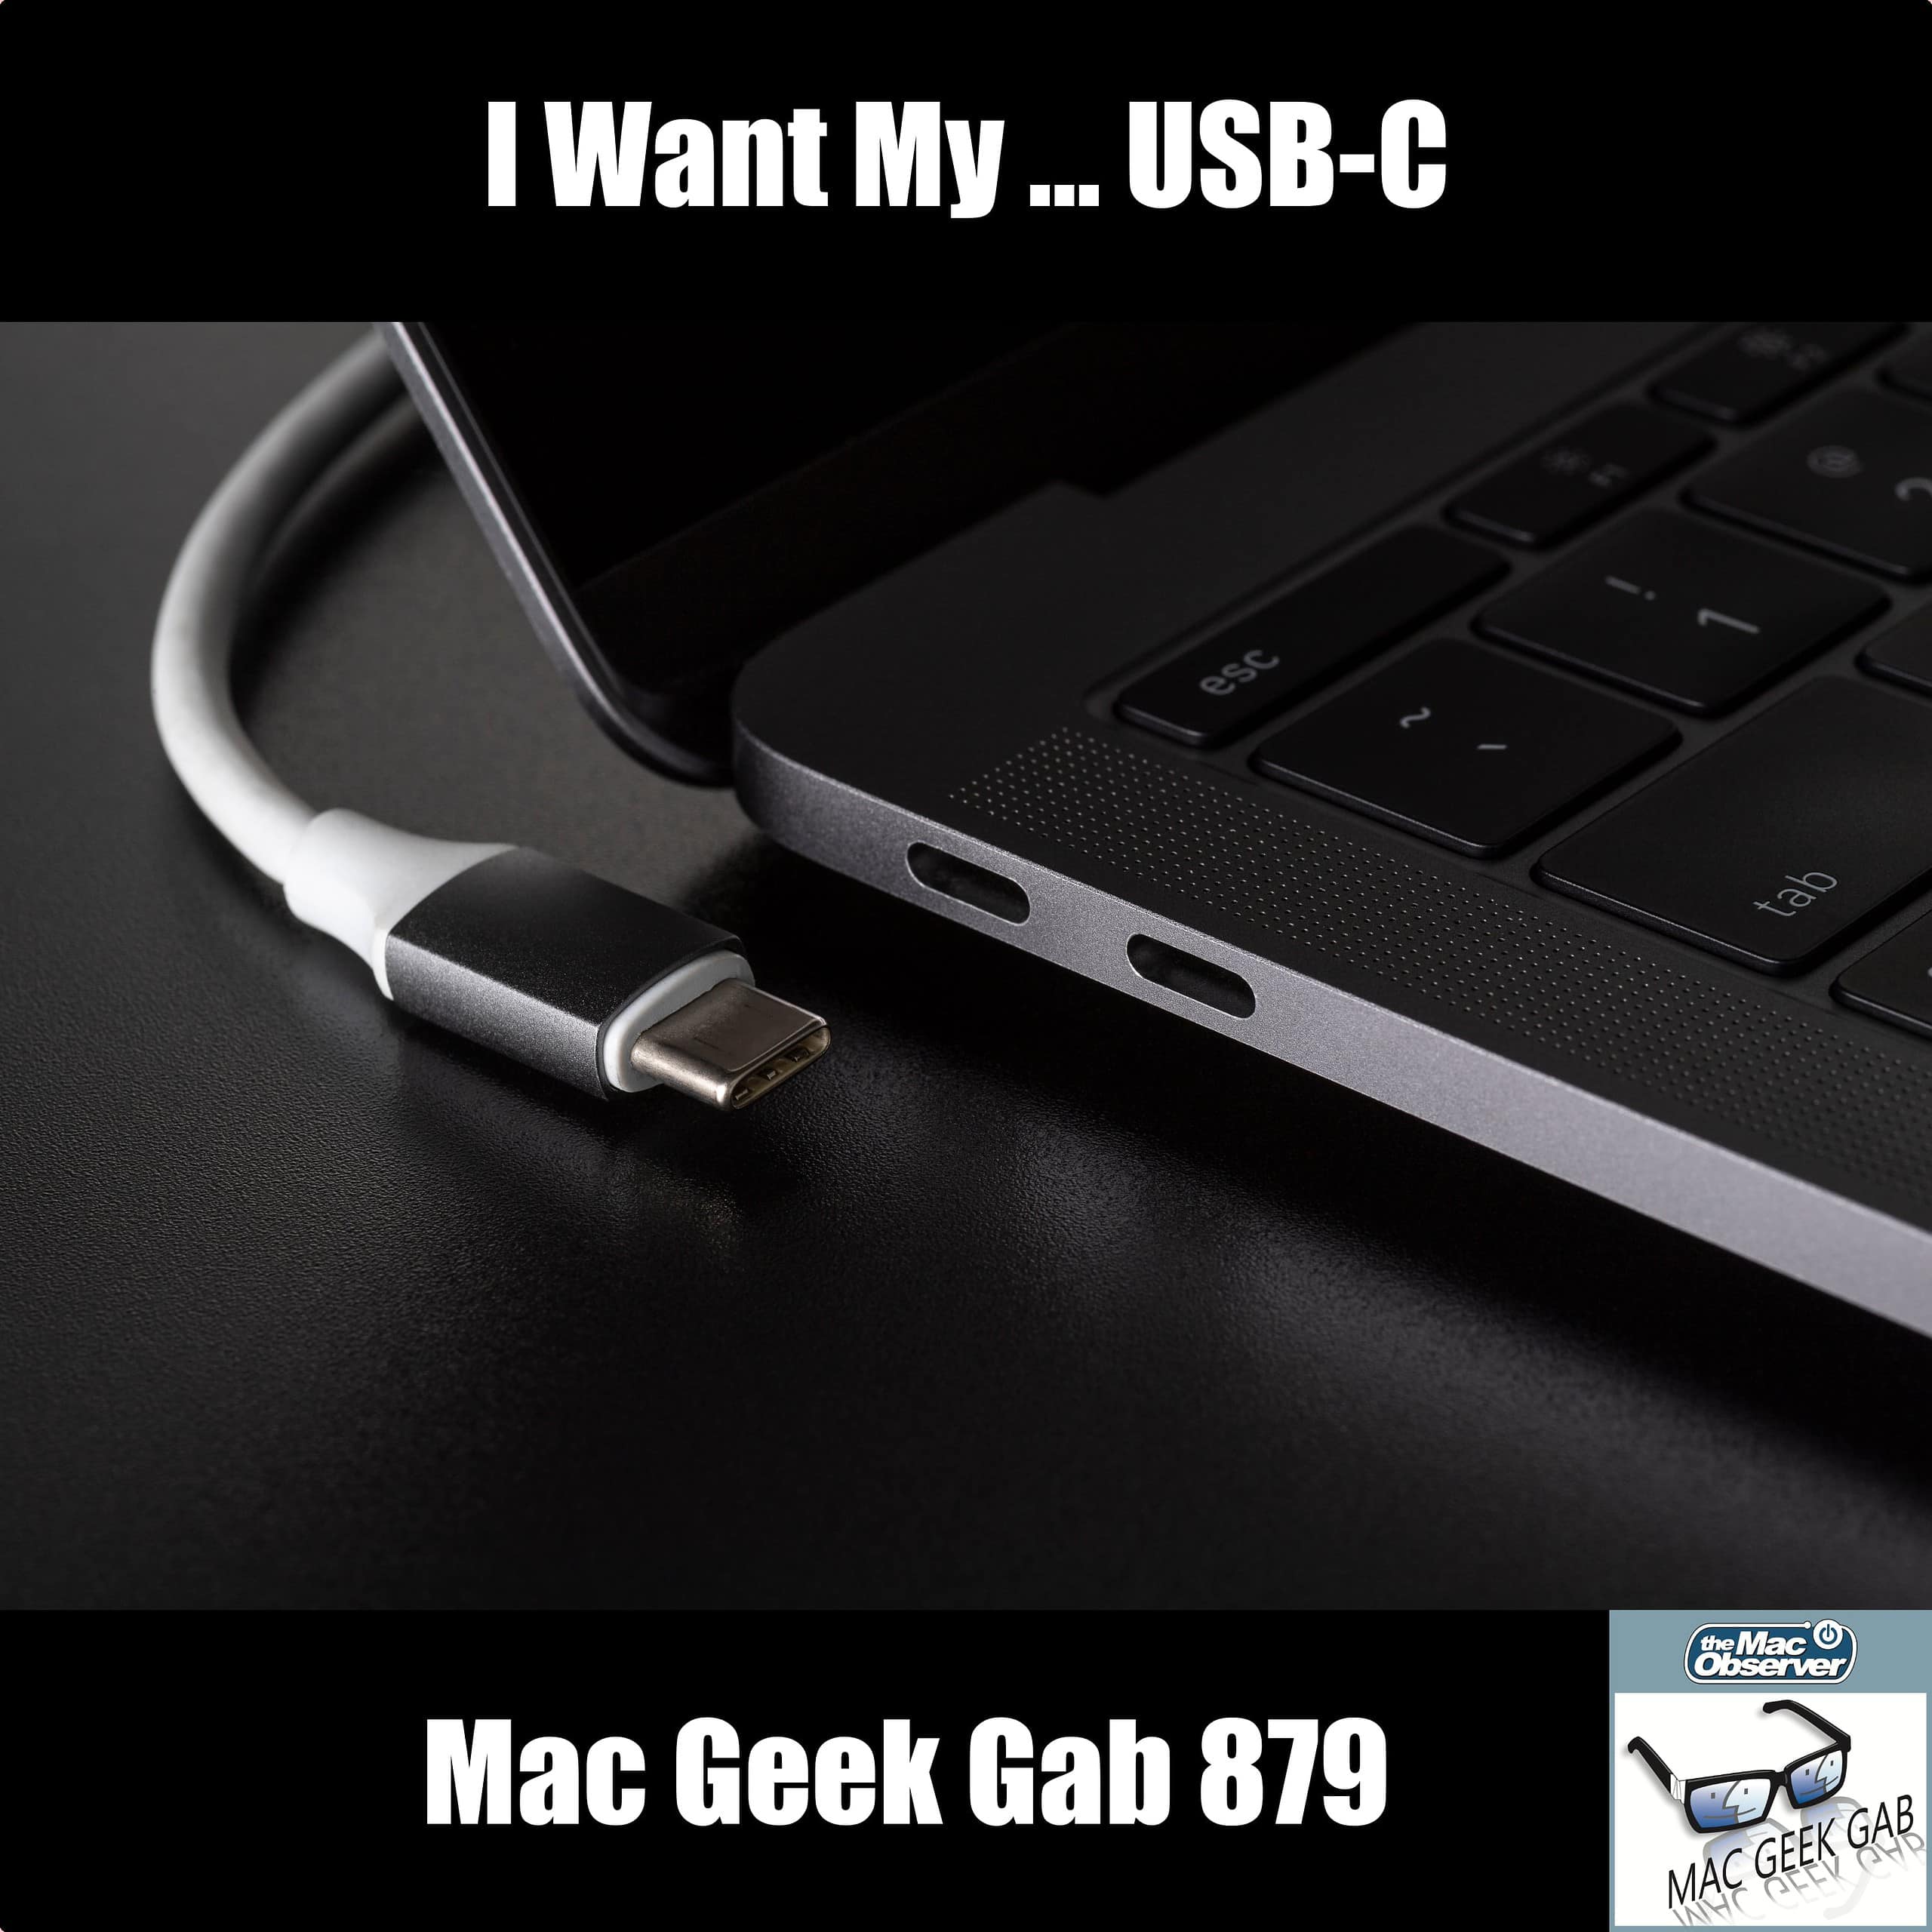 I Want My, I Want My, I Want My … USB-C! — Mac Geek Gab 879